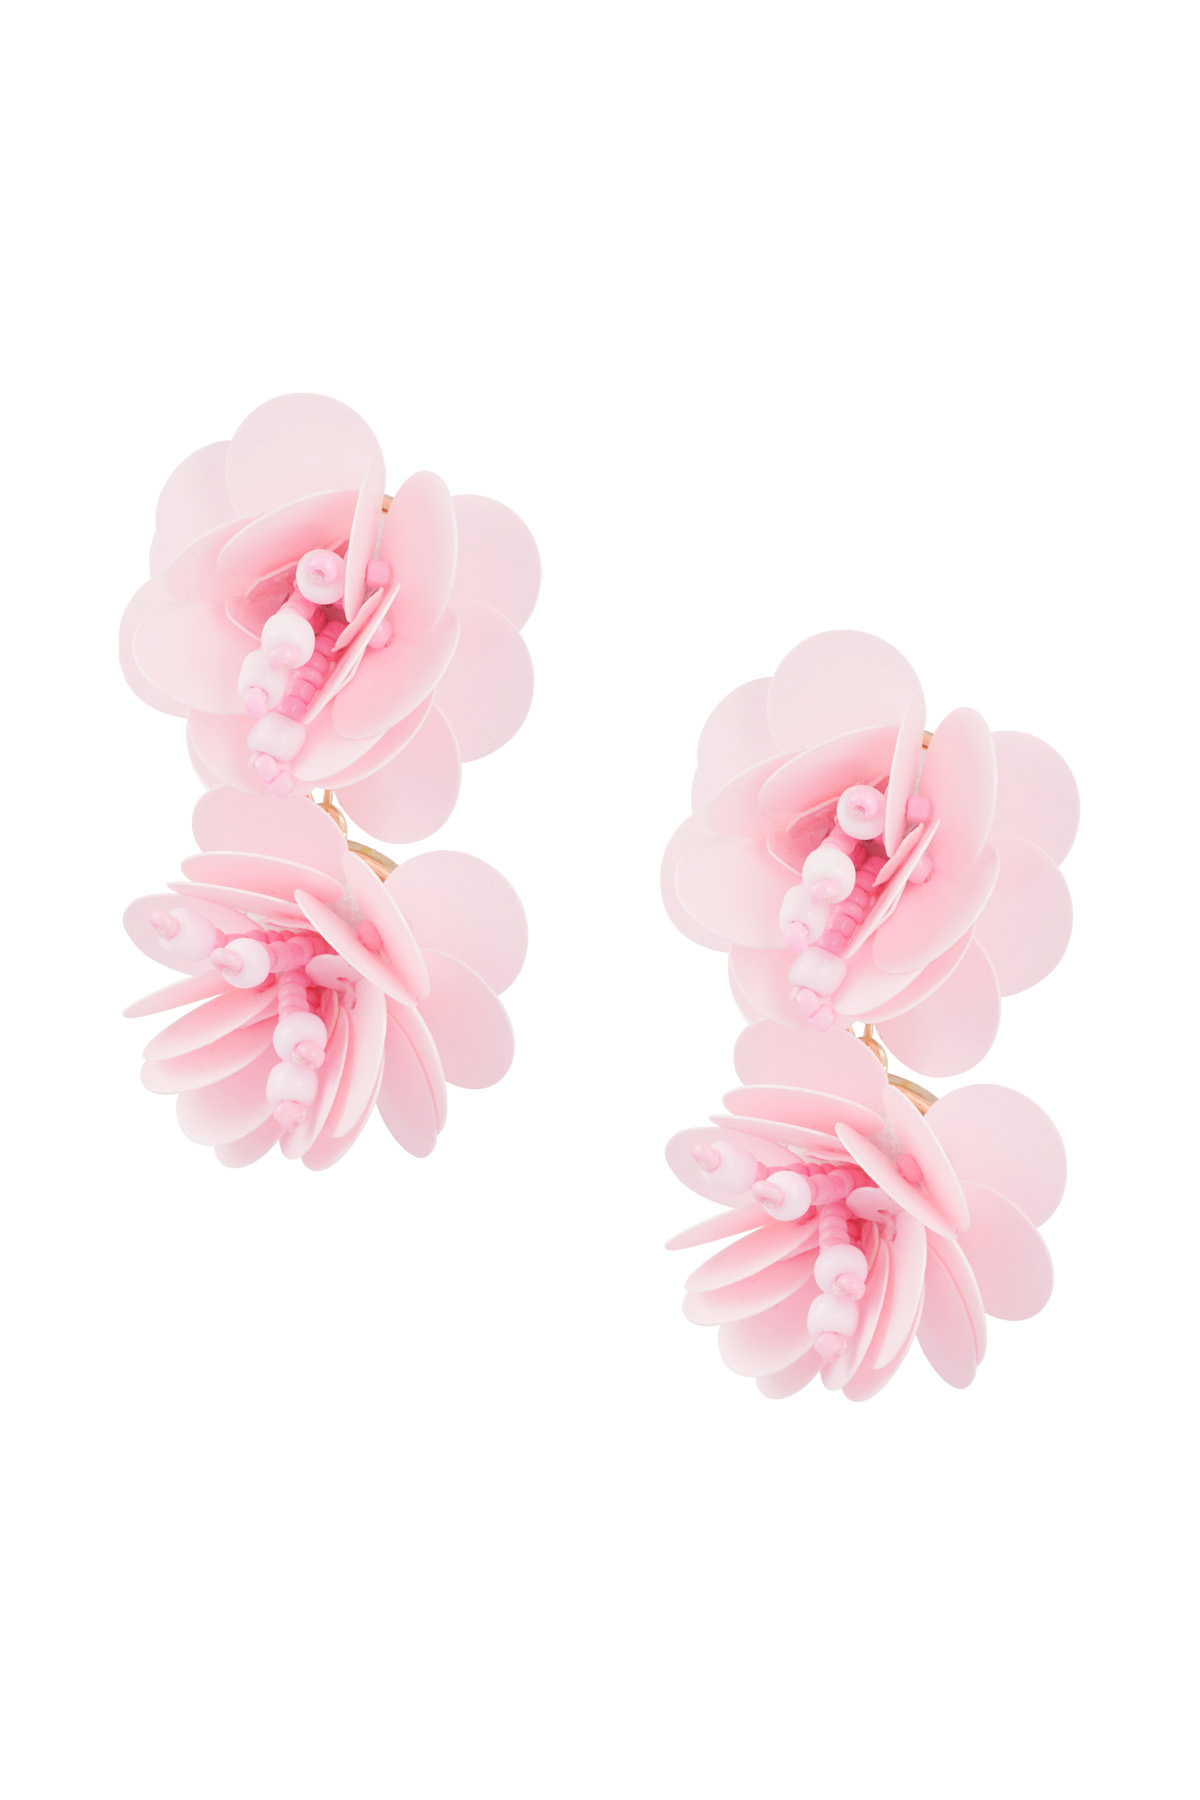 Earrings rose spirit - pale pink